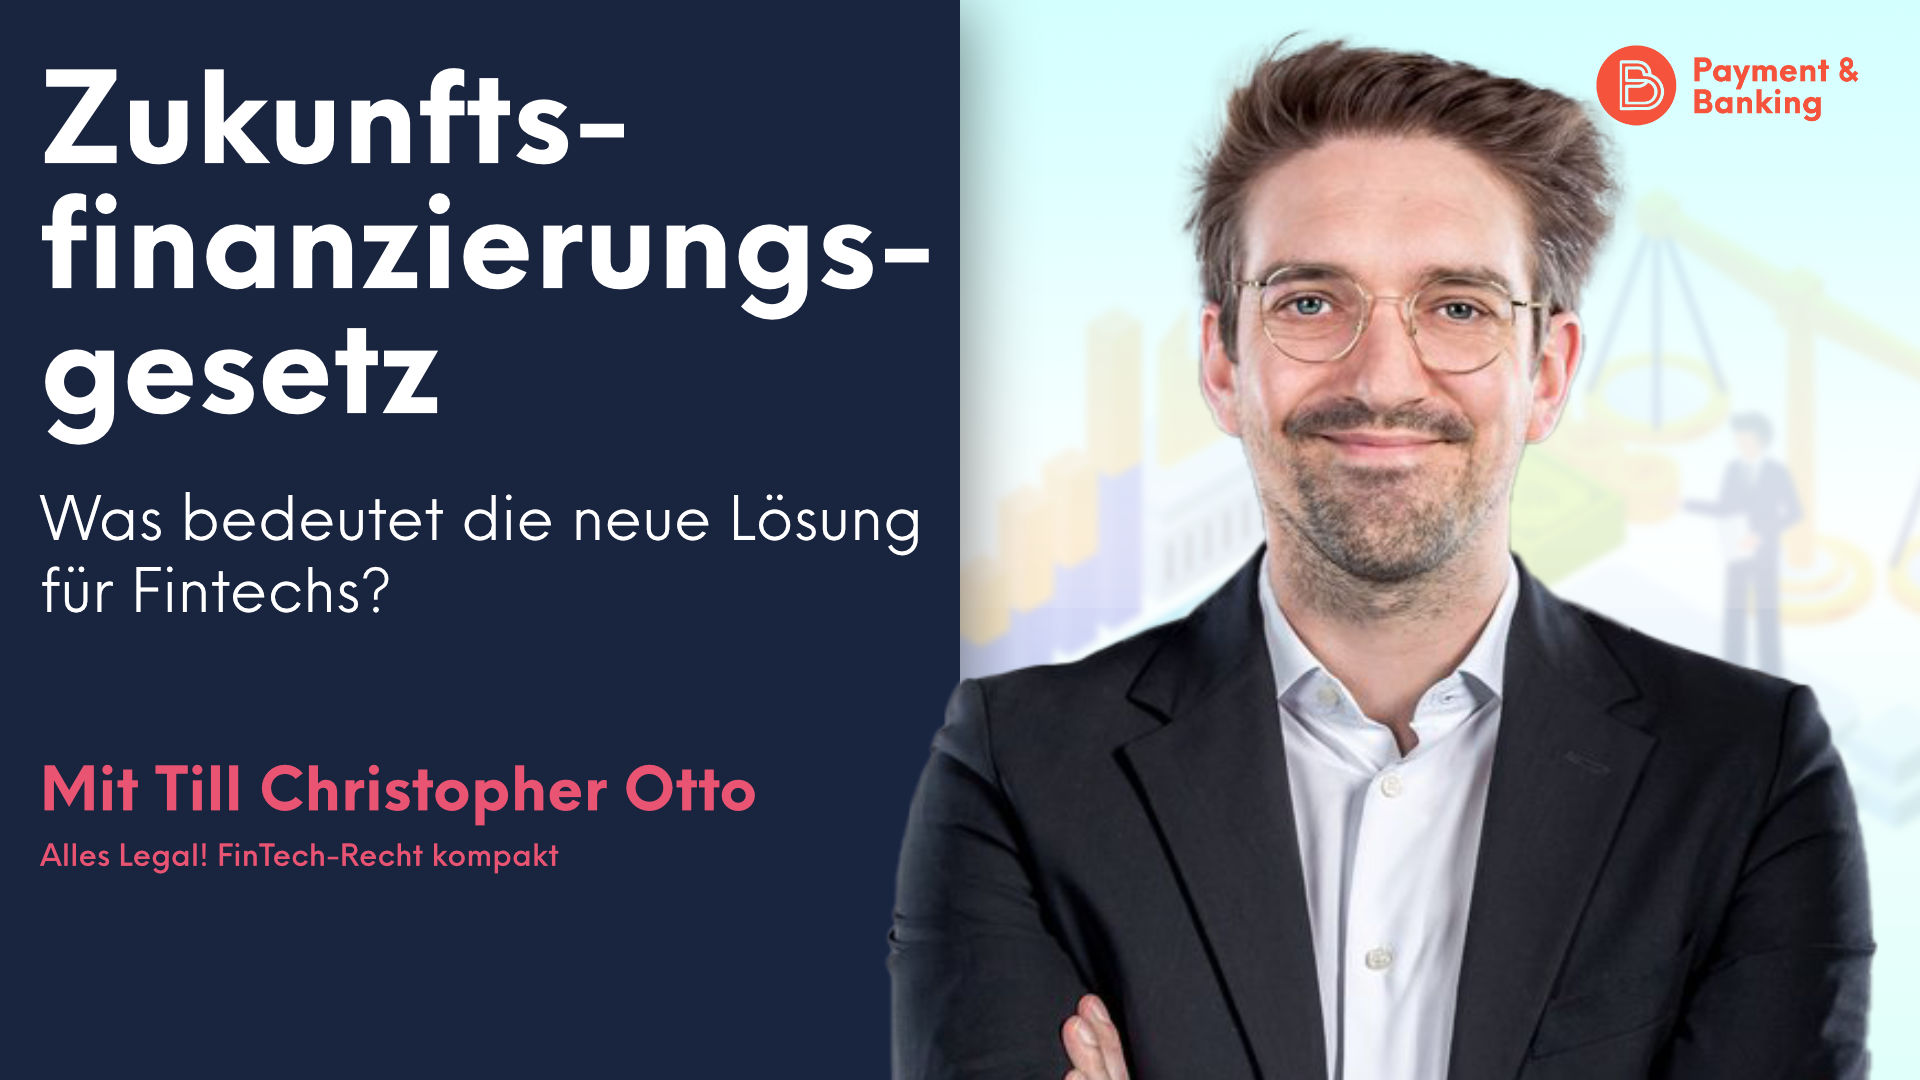 Till Christopher Otto von Paytechlaw erklärt, was das Zukunftsfinanzierungsgesetz für Fintechs in Deutschland bedeutet, wie es bisher lief und was die Lösung für Auswirkungen auf Emittenten hat.